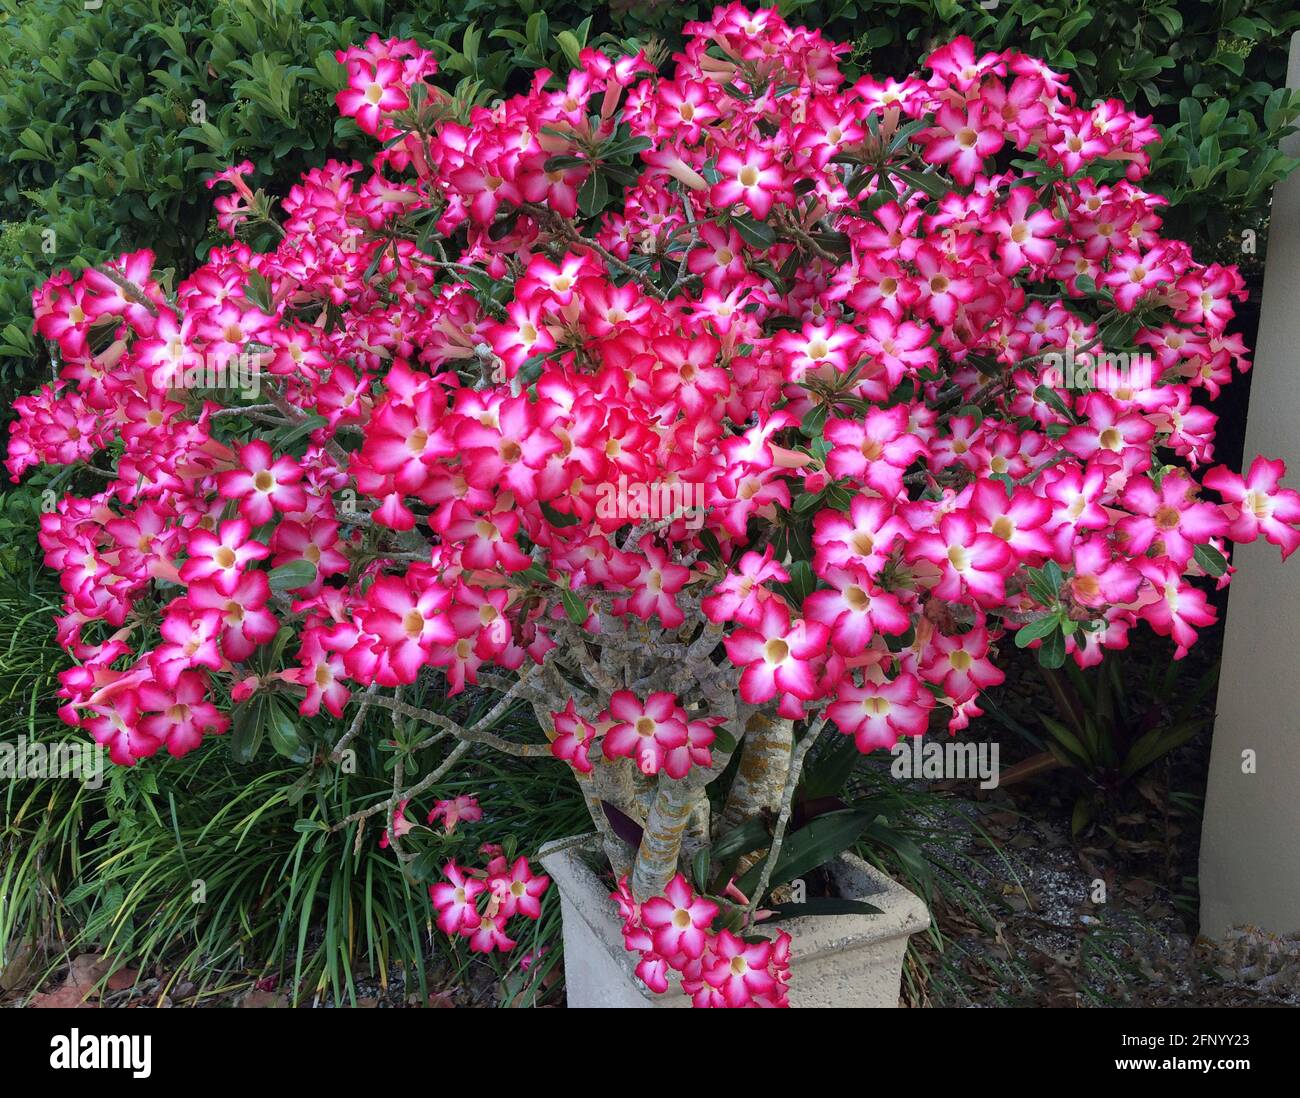 Desert Rose est un nom commun pour Adenium obesum, une plante succulente à fleurs qui est également appelée Sabi star, mock azalea ou impala Lily. Originaire d'Afrique, c'est une plante ornementale populaire en plein air dans les climats plus chauds où le soleil est abondant, comme en Floride, aux États-Unis, où cet arbuste de 10 ans pousse dans un petit récipient. Le rose profond et le rouge sont les couleurs dominantes des magnifiques fleurs en forme de cloche de 5 pétales de la plante. Notez que la sève laiteuse des roseres du désert est toxique et considérée comme toxique pour les humains et les animaux. Banque D'Images